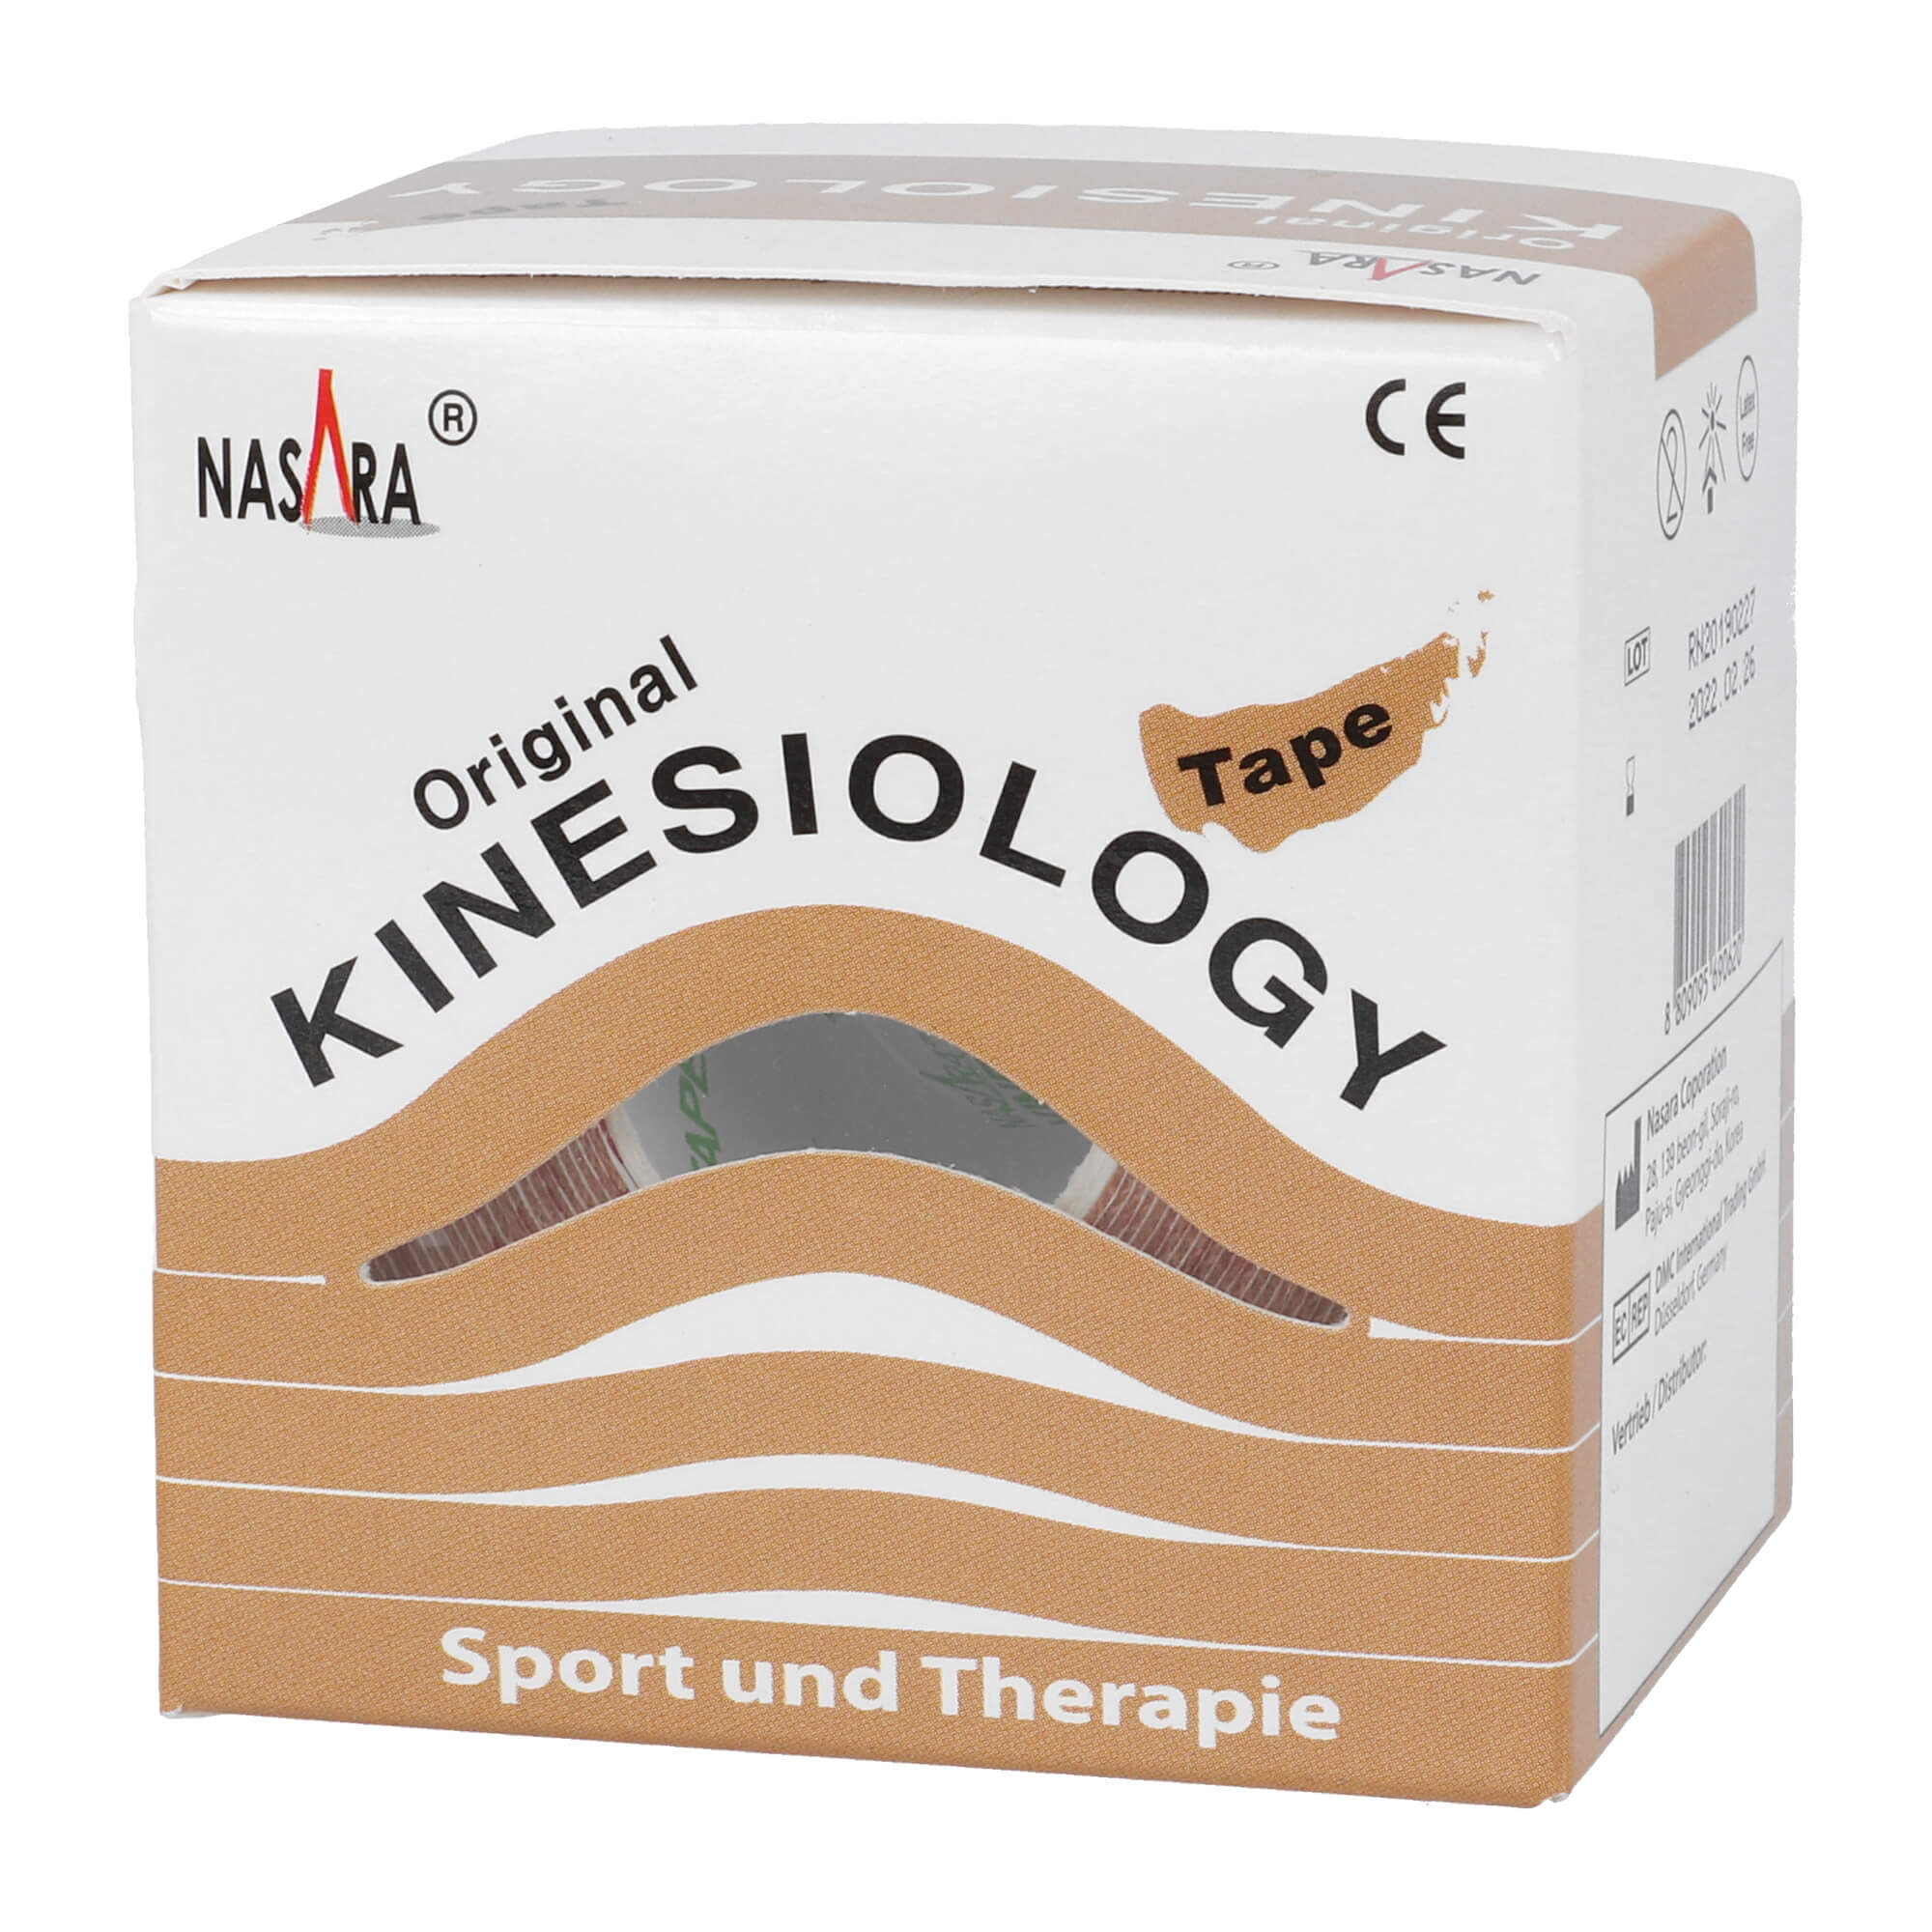 Kinesiology Tape für Sport und Therapie. Farbe: beige.